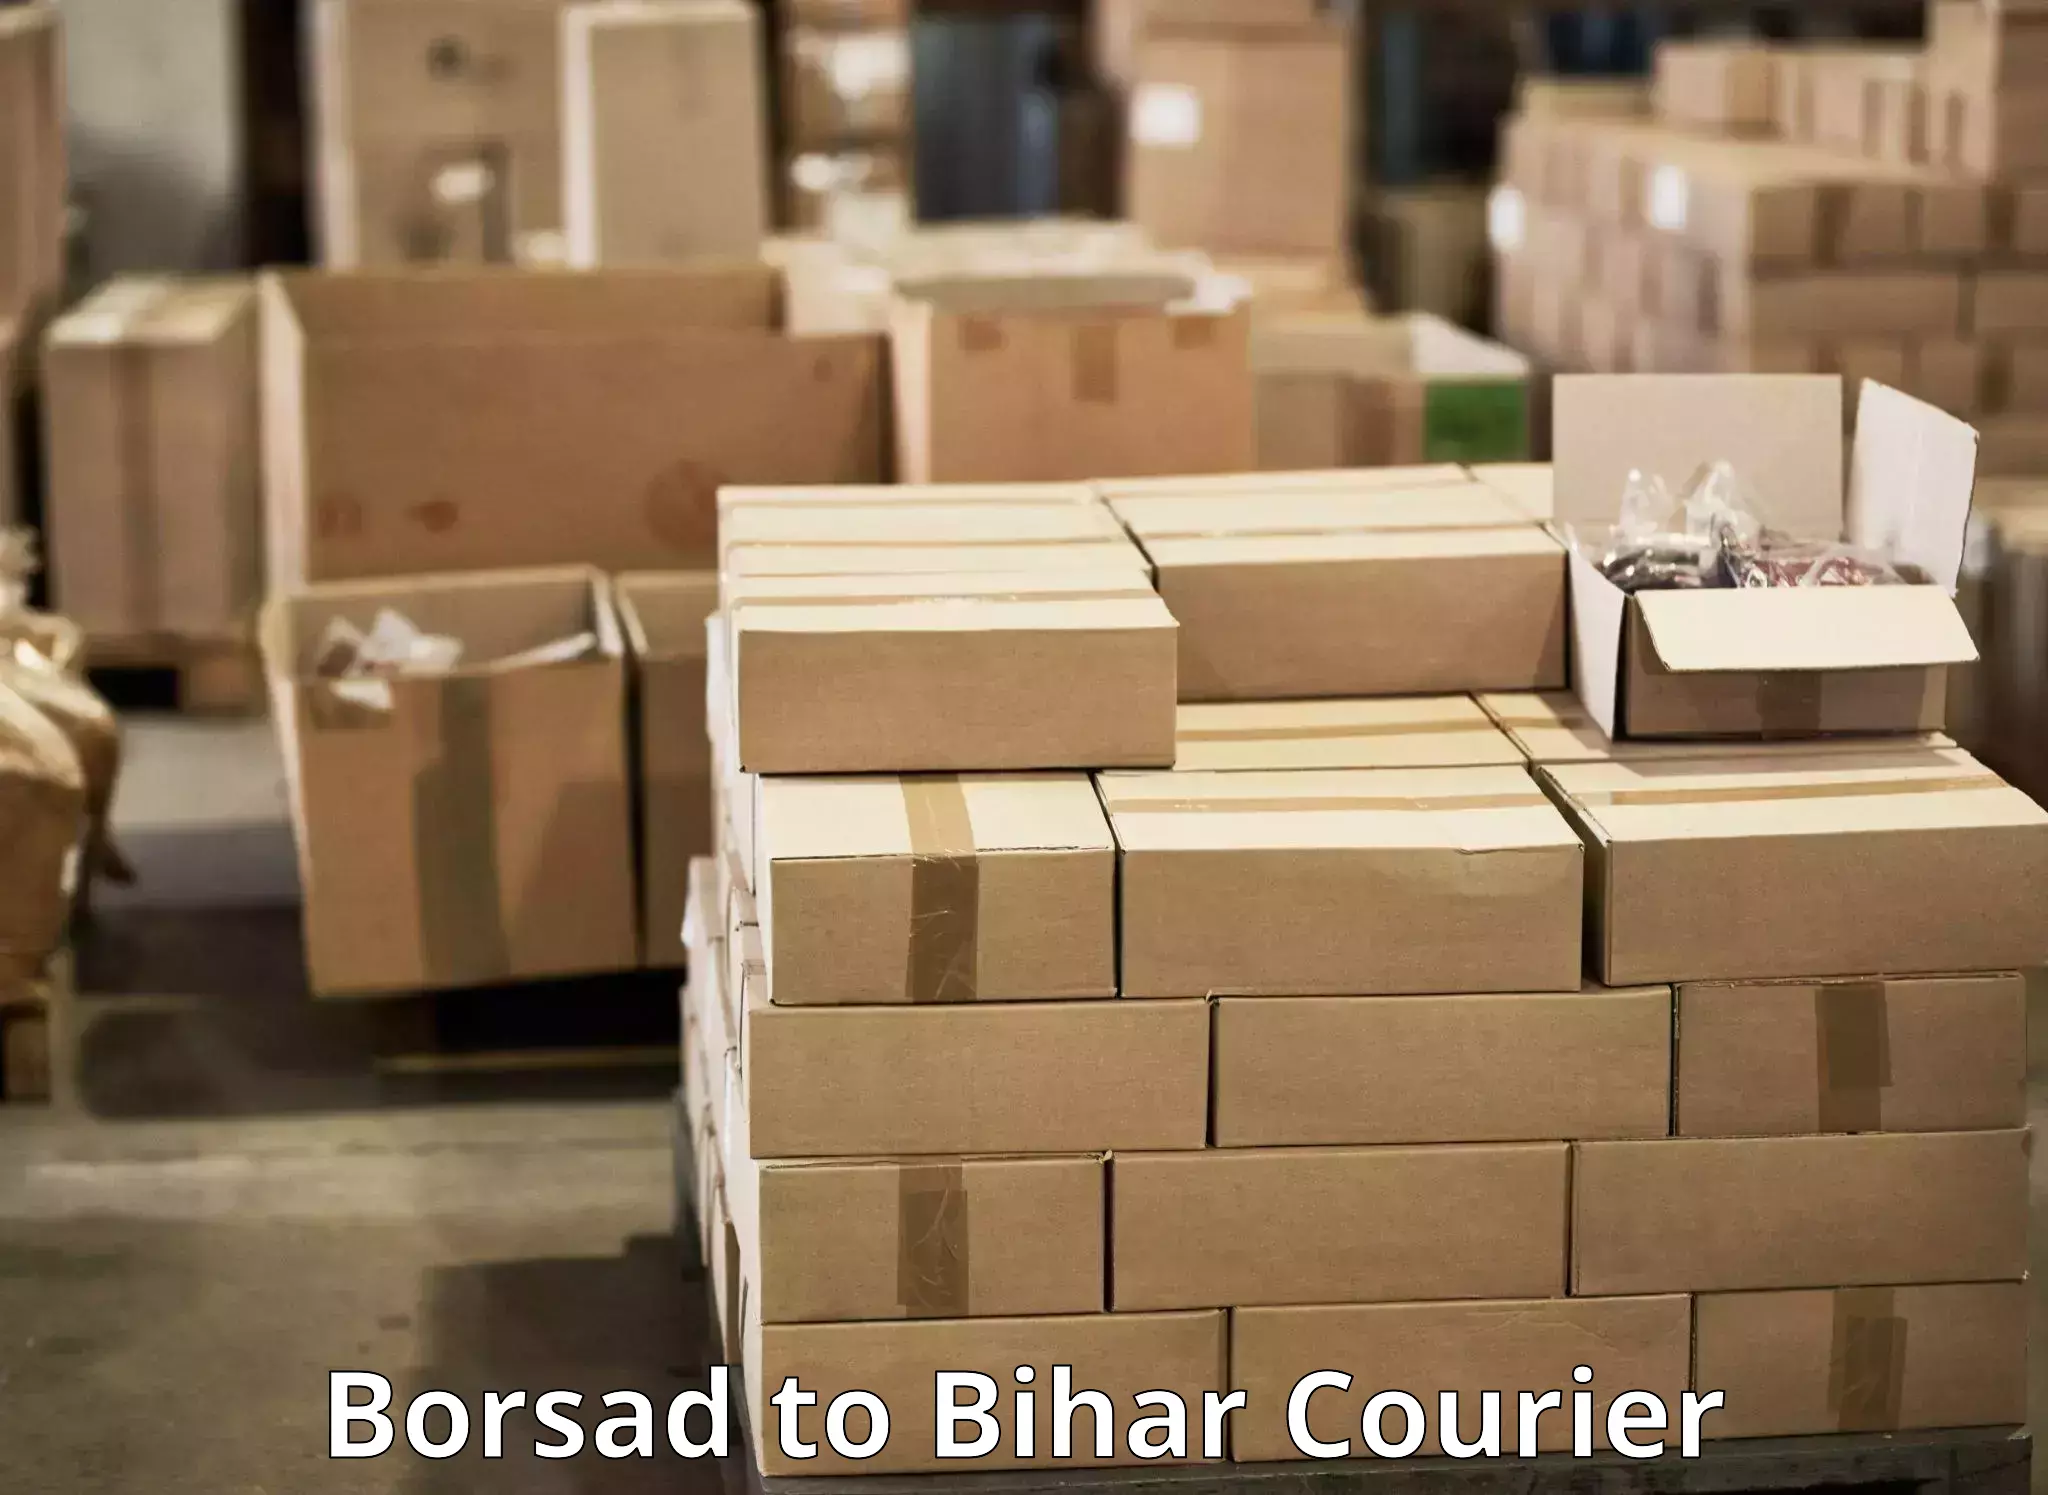 Local delivery service Borsad to Bhorey